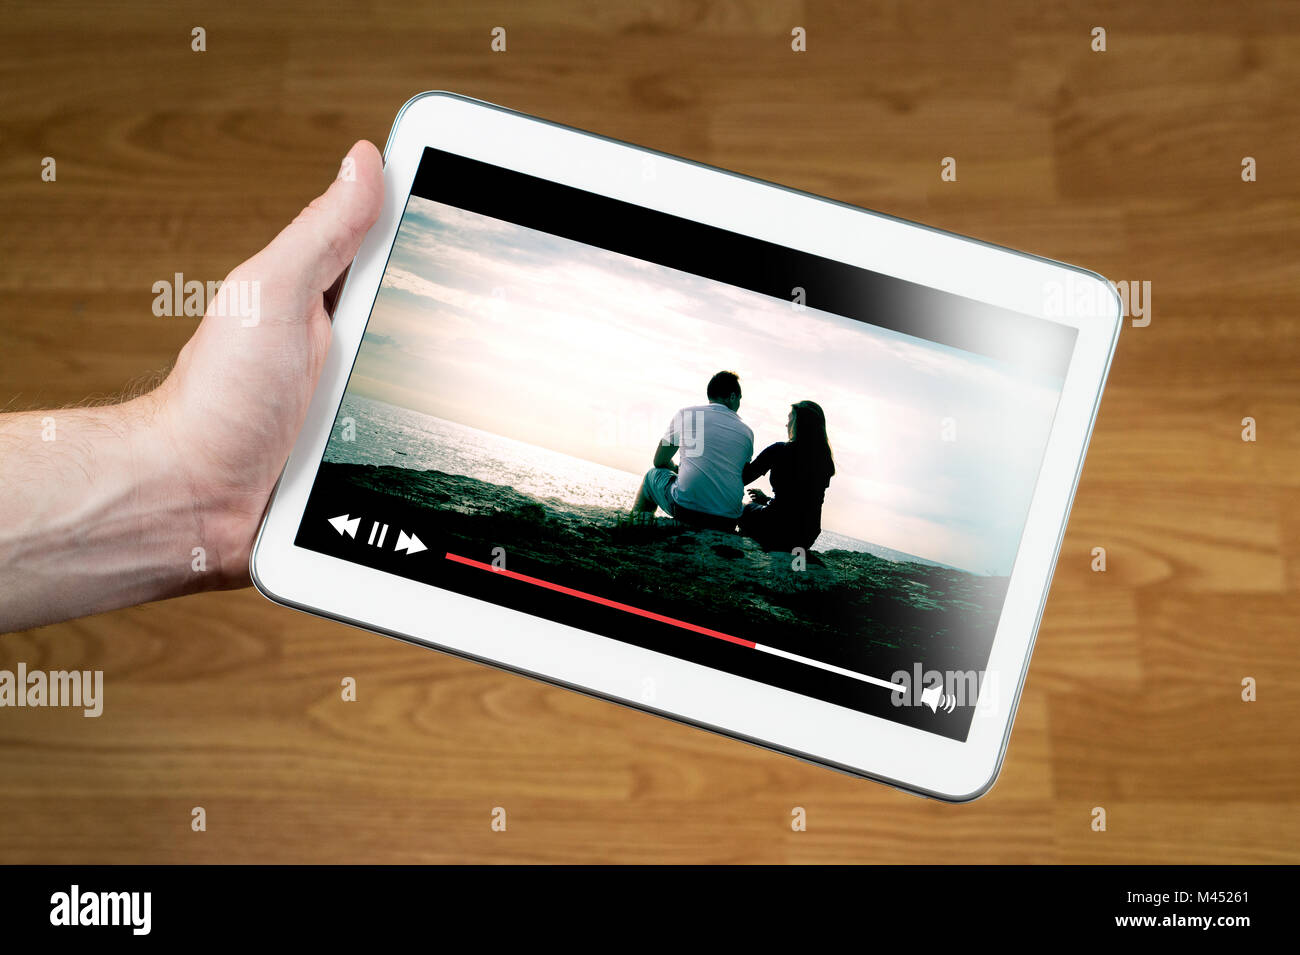 Homme regarder la vidéo en ligne avec l'appareil mobile. Hand holding tablet avec lecteur vidéo imaginaire et film en streaming. Banque D'Images